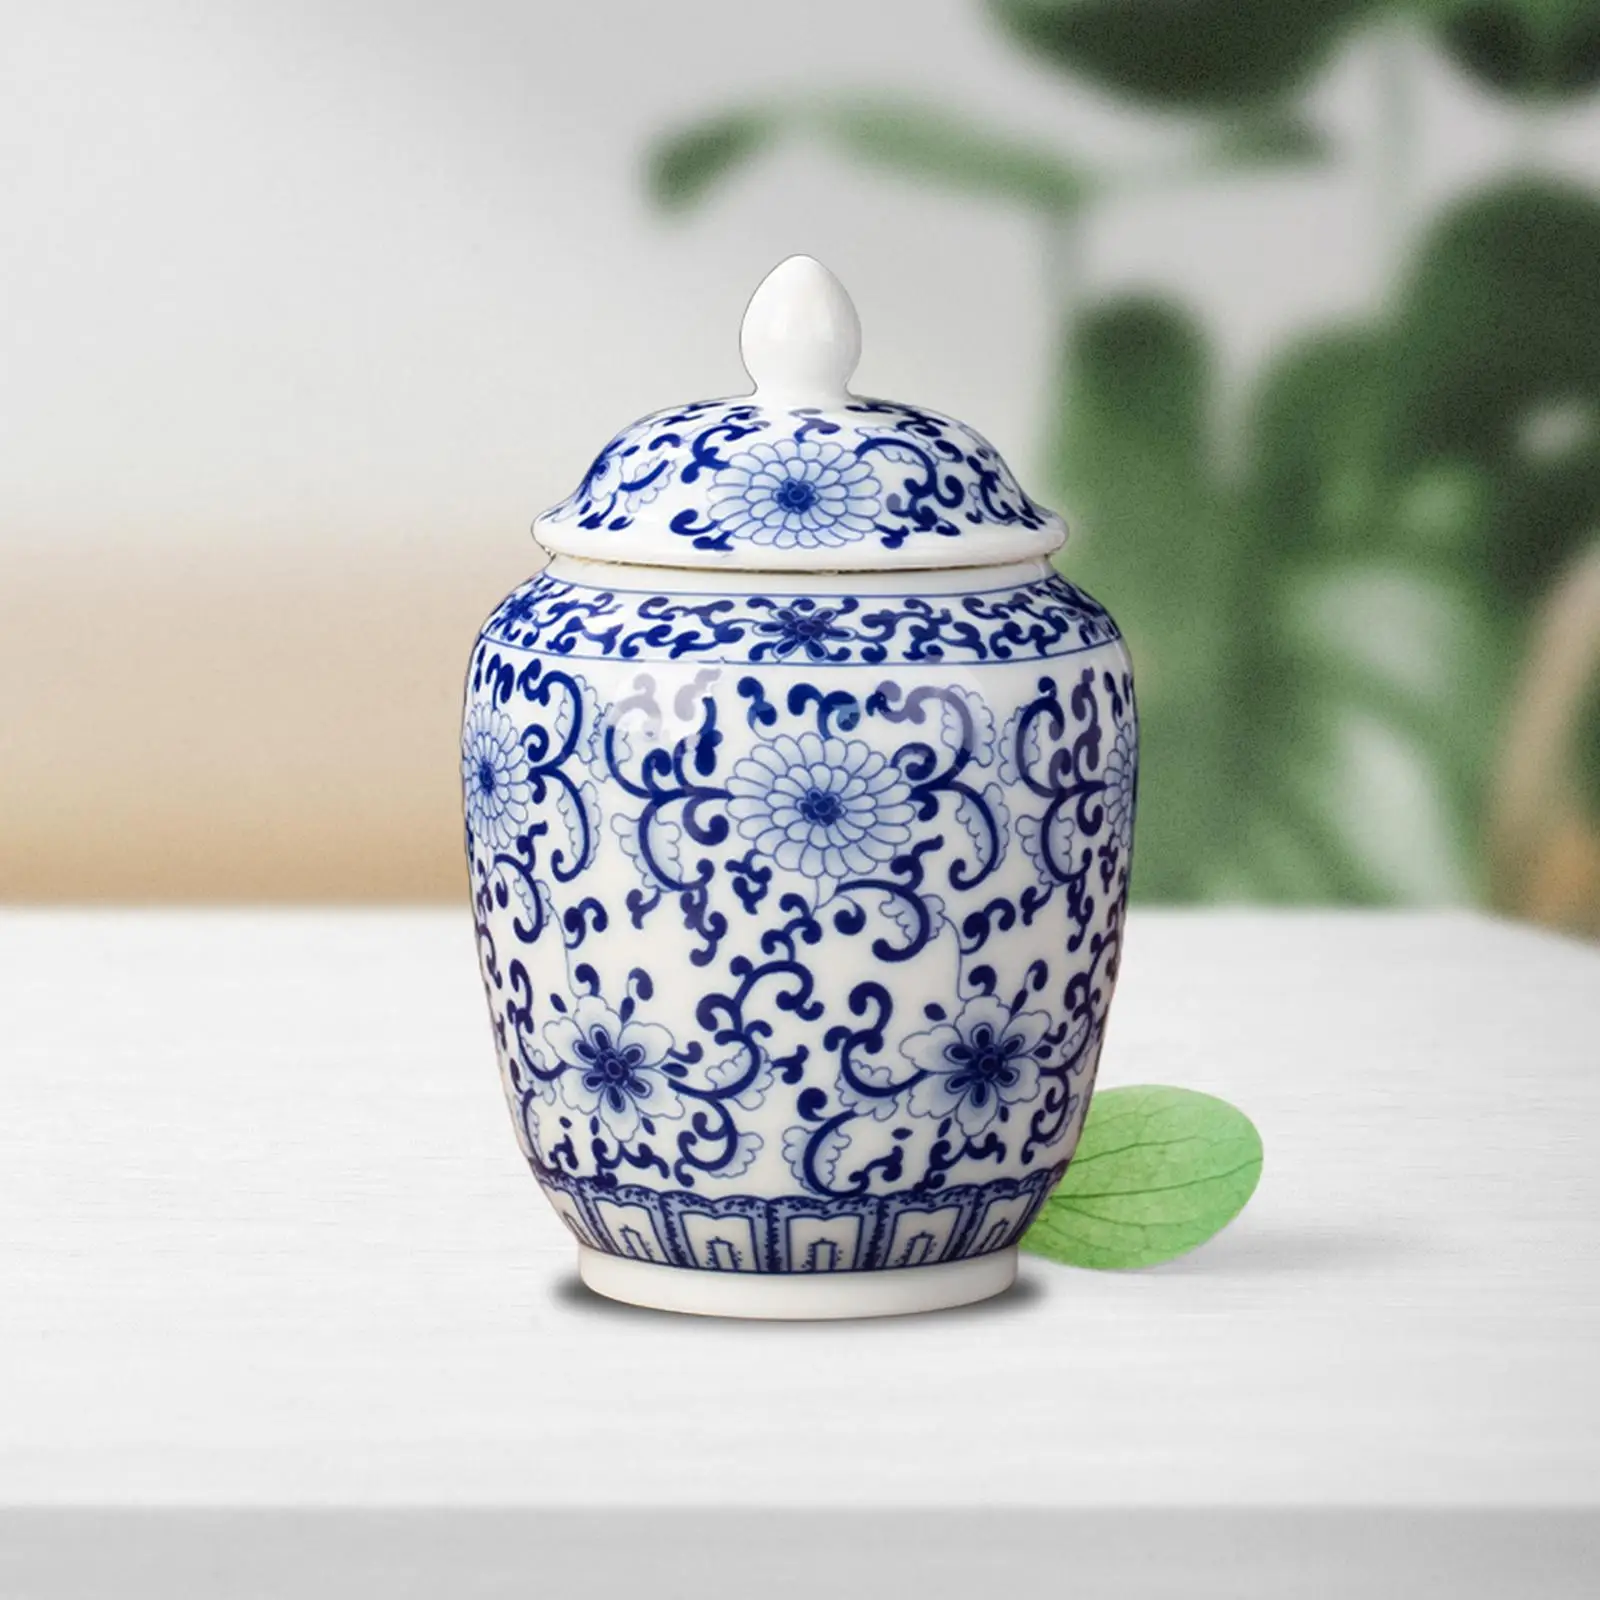 Ceramic Ginger Jar Chinese Style Ornaments Decorative Asian Ginger Jar for Party Desktop Wedding Living Room Floral Arrangement